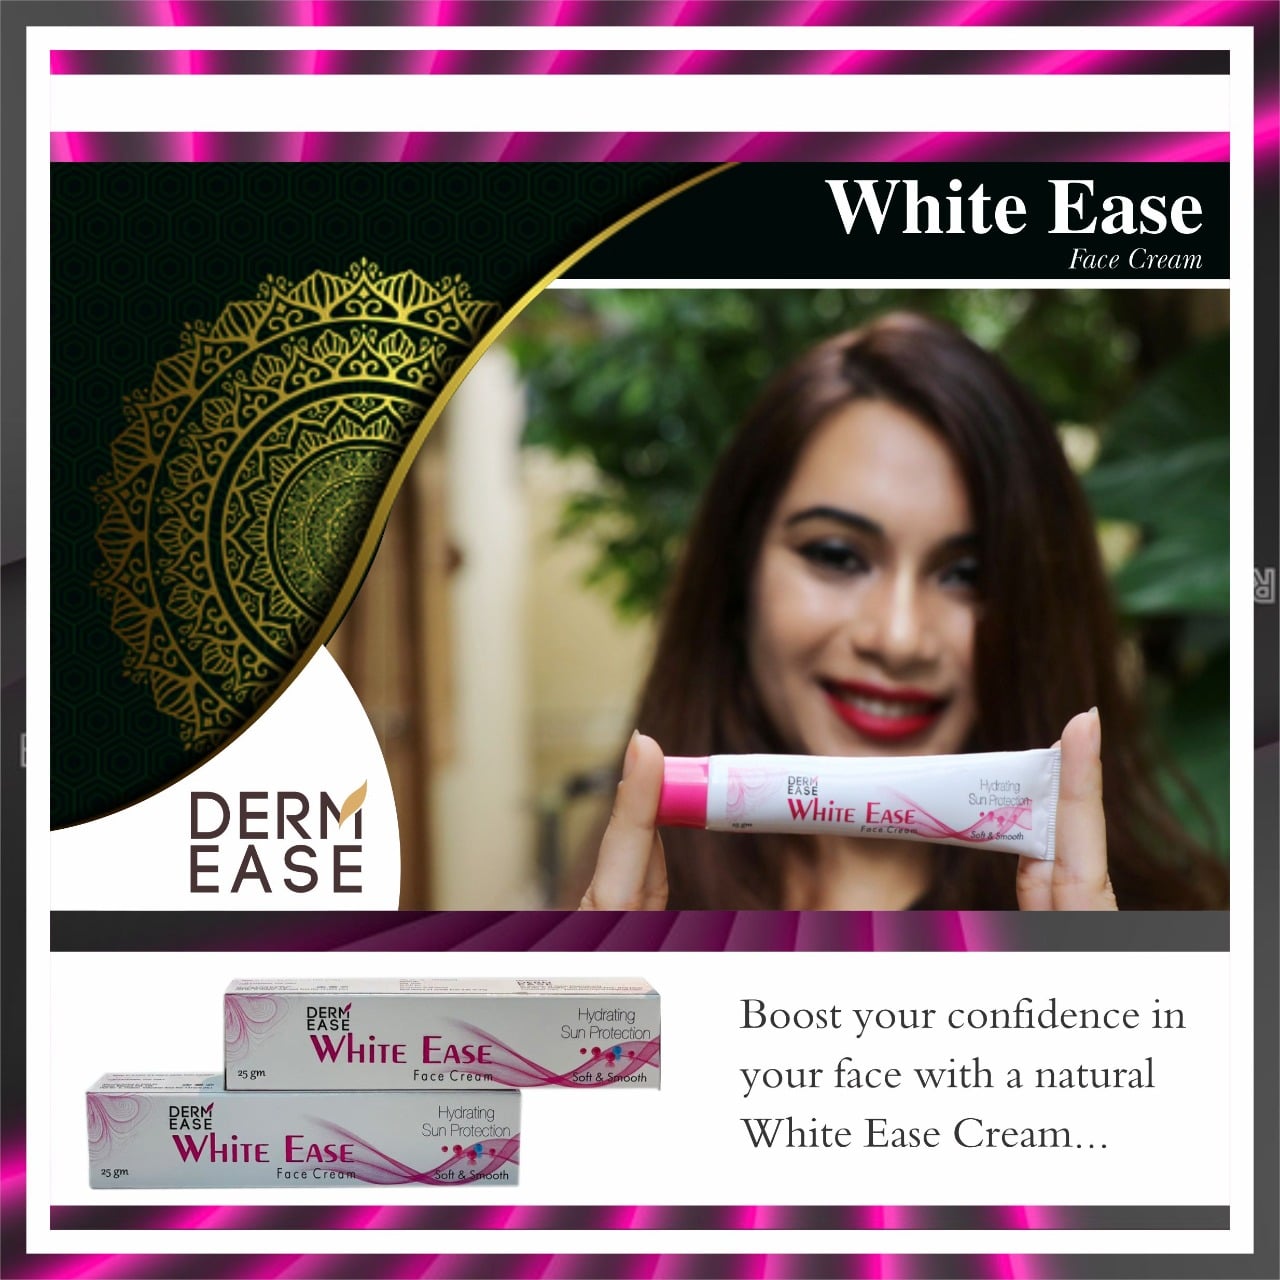 DERM EASE White Ease Face Cream